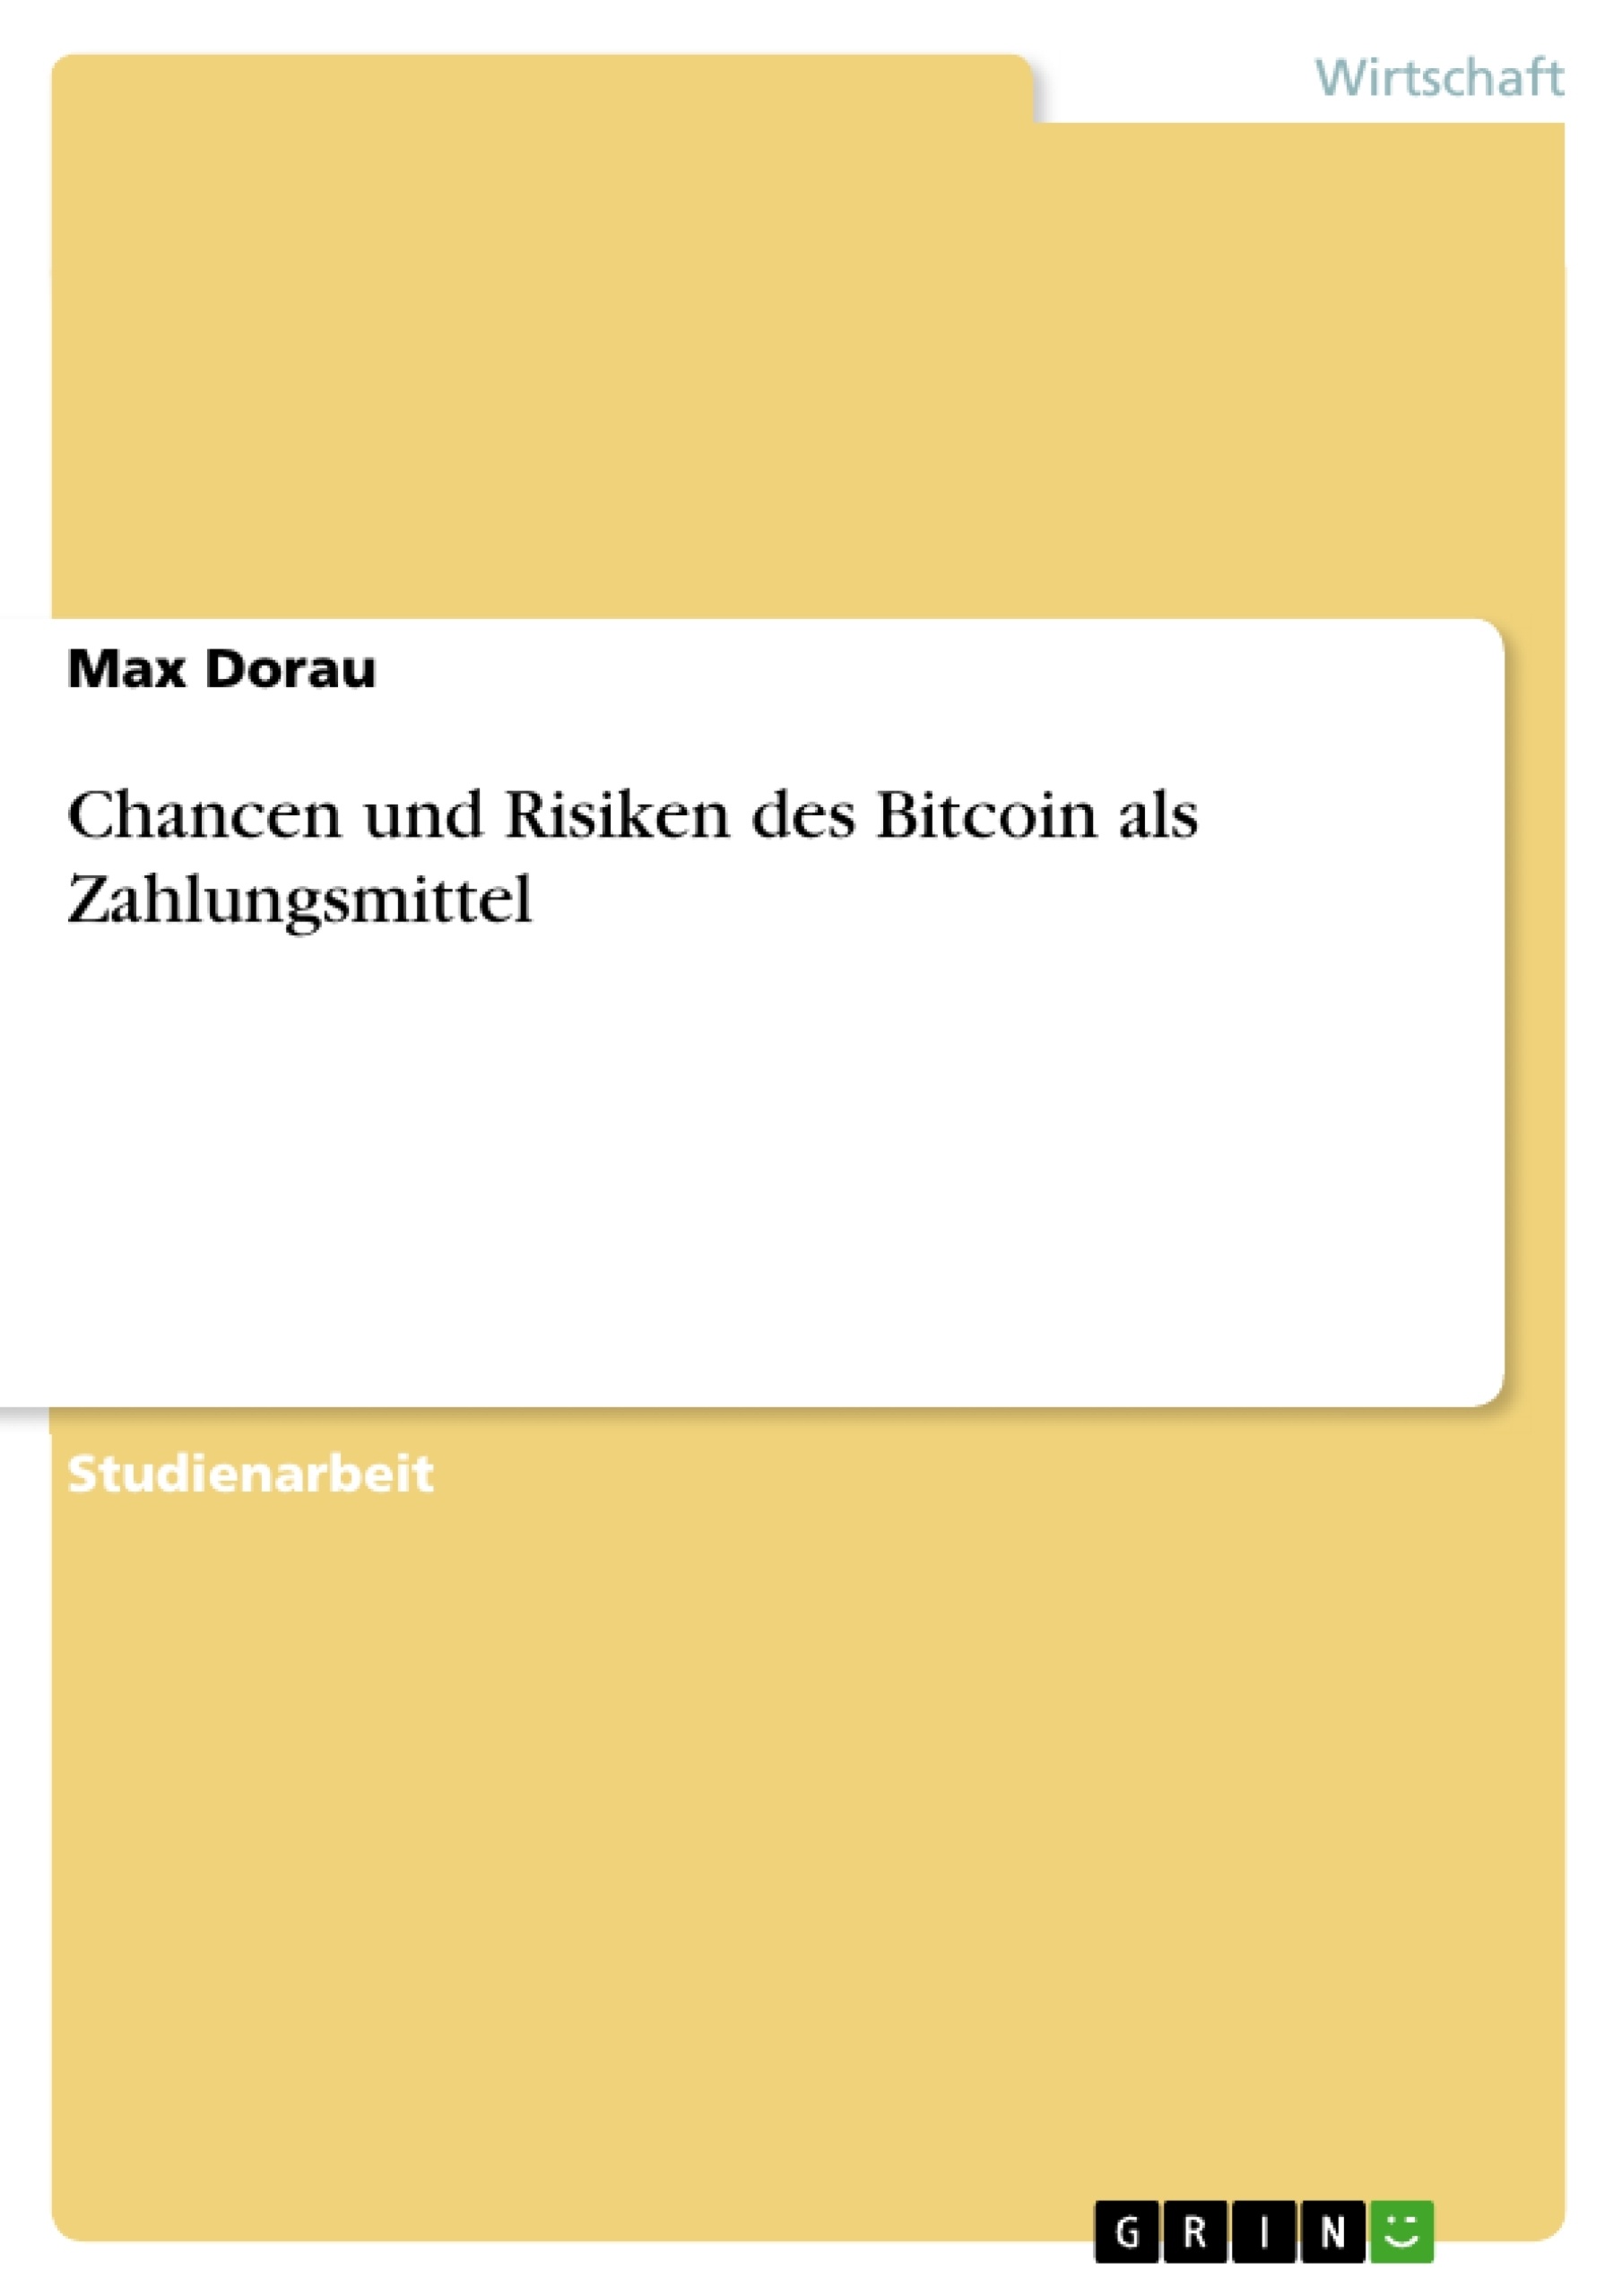 Titel: Chancen und Risiken des Bitcoin als Zahlungsmittel